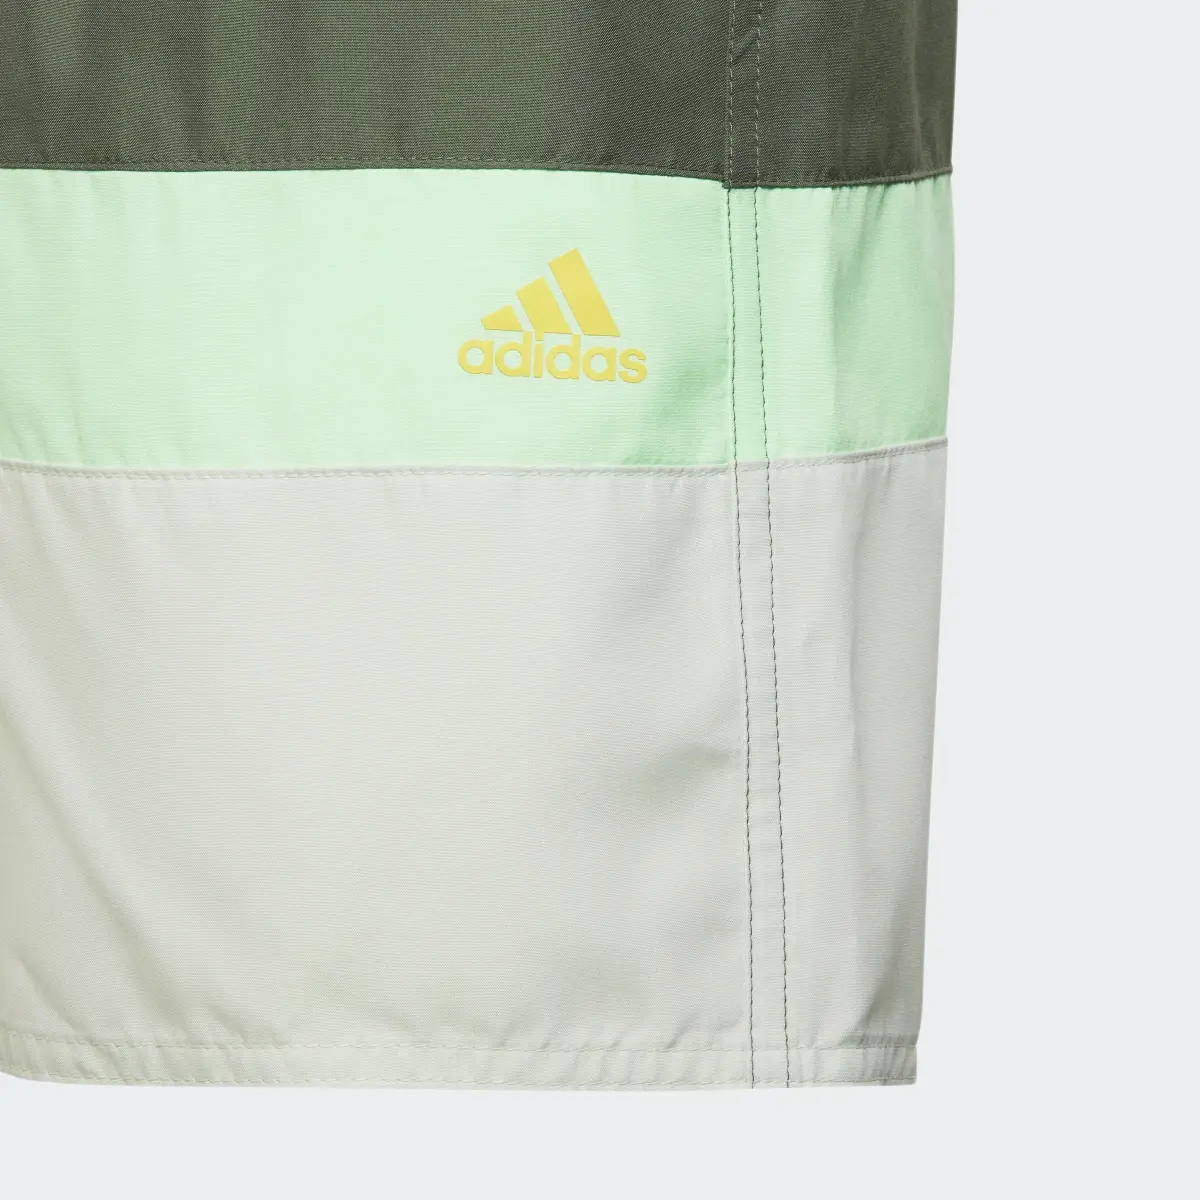 Adidas Colorblock Badeshorts. 3